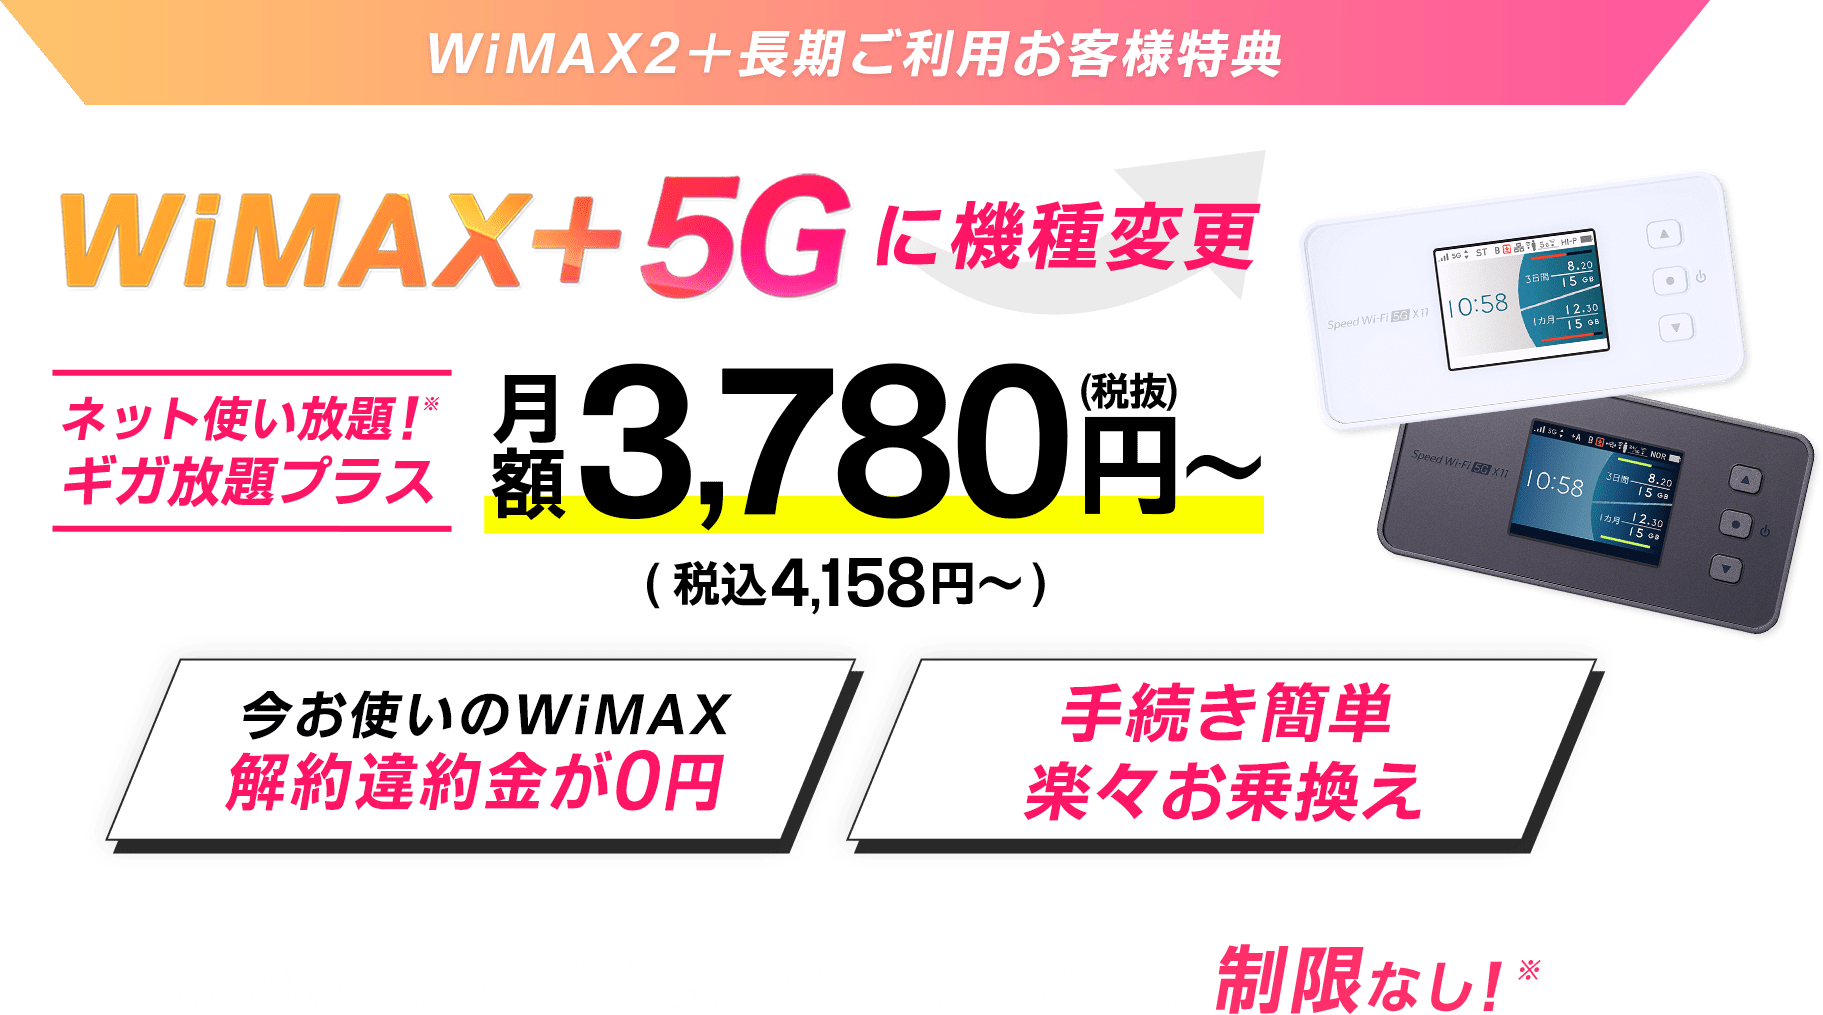 【WiMAX 2+長期ご利用お客様特典】WiMAX +5Gに機種変更｜ネット使い放題！※ギガ放題プラス｜今お使いのWiMAX解約違約金が0円｜手続き簡単楽々お乗換え｜WiMAX +5Gなら3日で10GBのような制限なし！